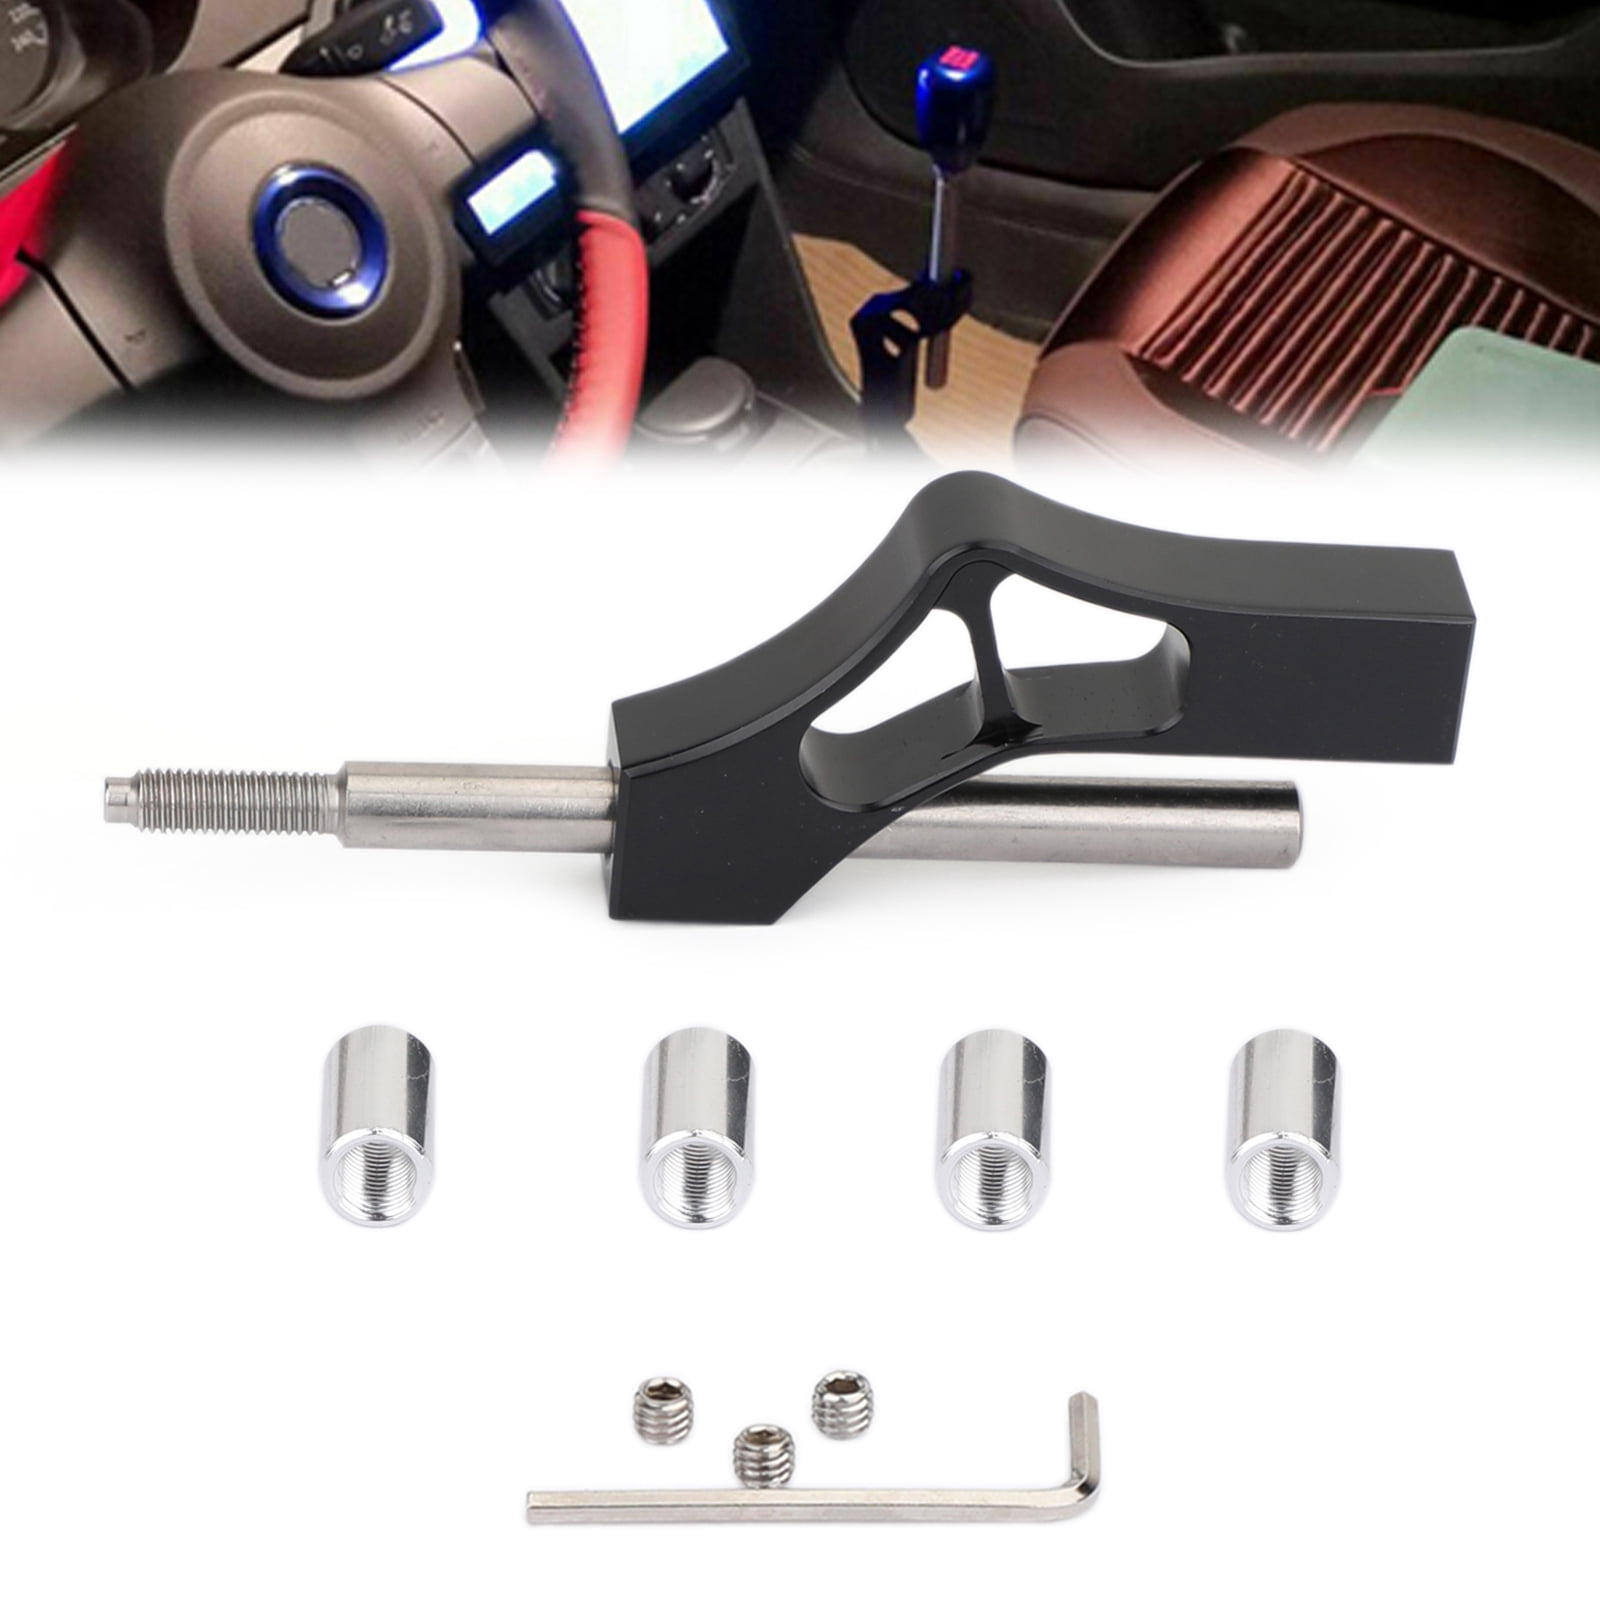 K tuned Aluminum Shift Knob Extension Adjustable Height Lever Extender Shifter